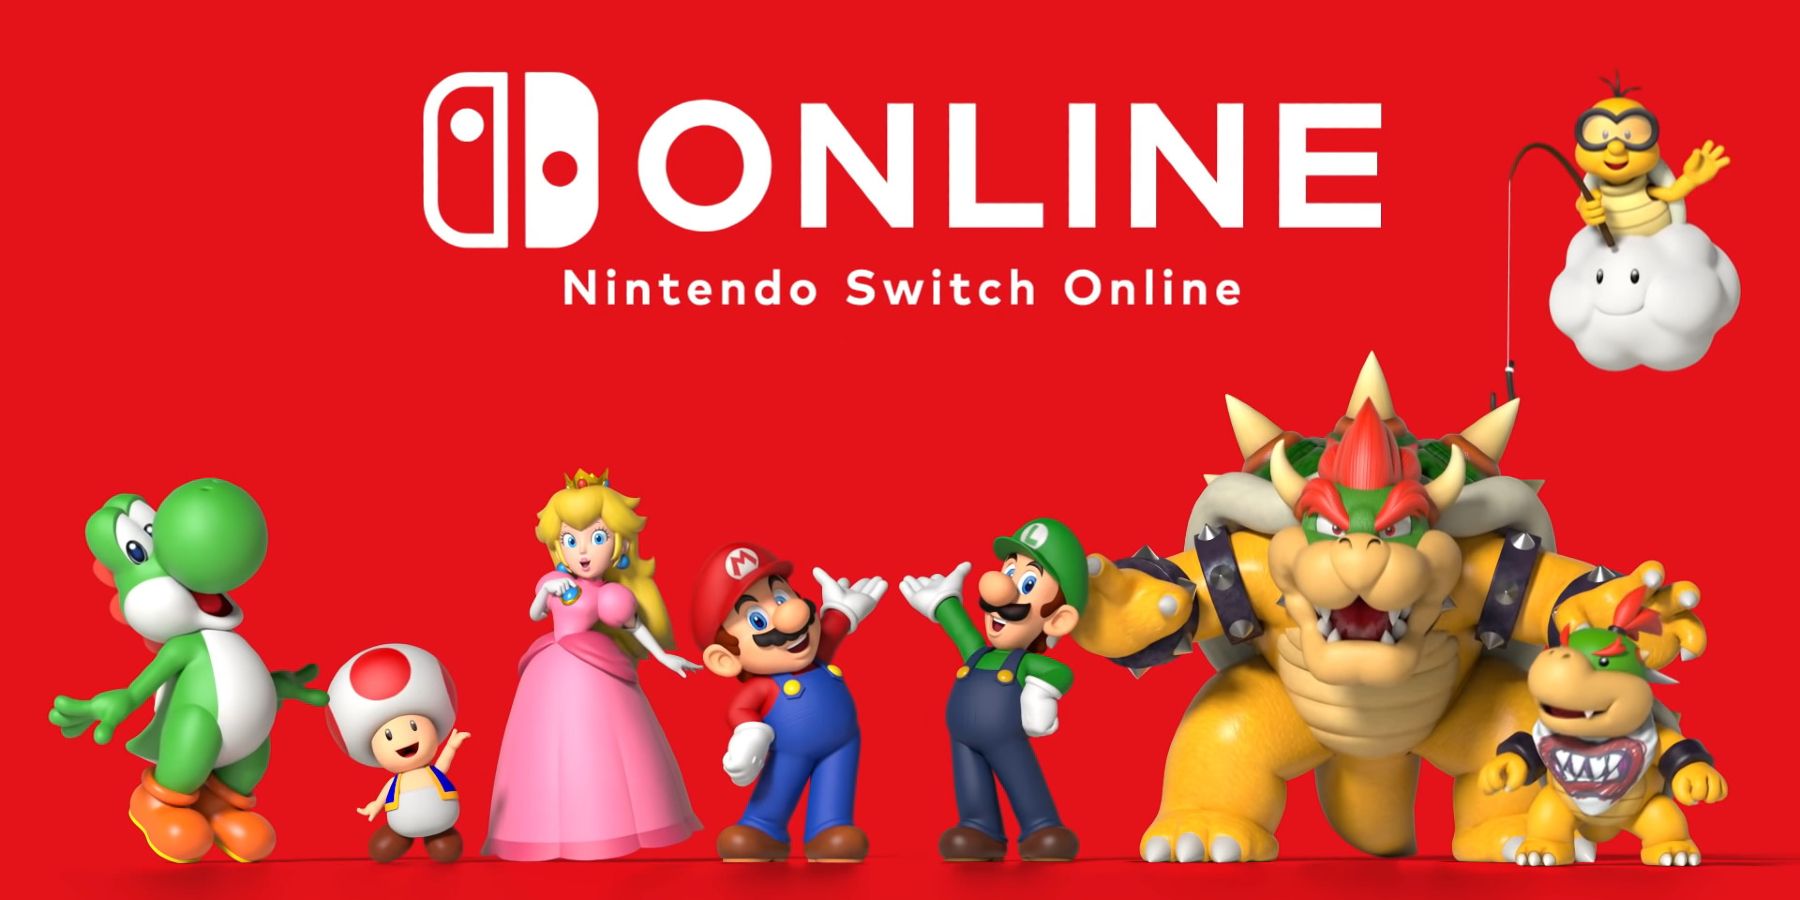 Conclusie vriendelijk Ellendig Nintendo Comments on N64 Switch Online Backlash